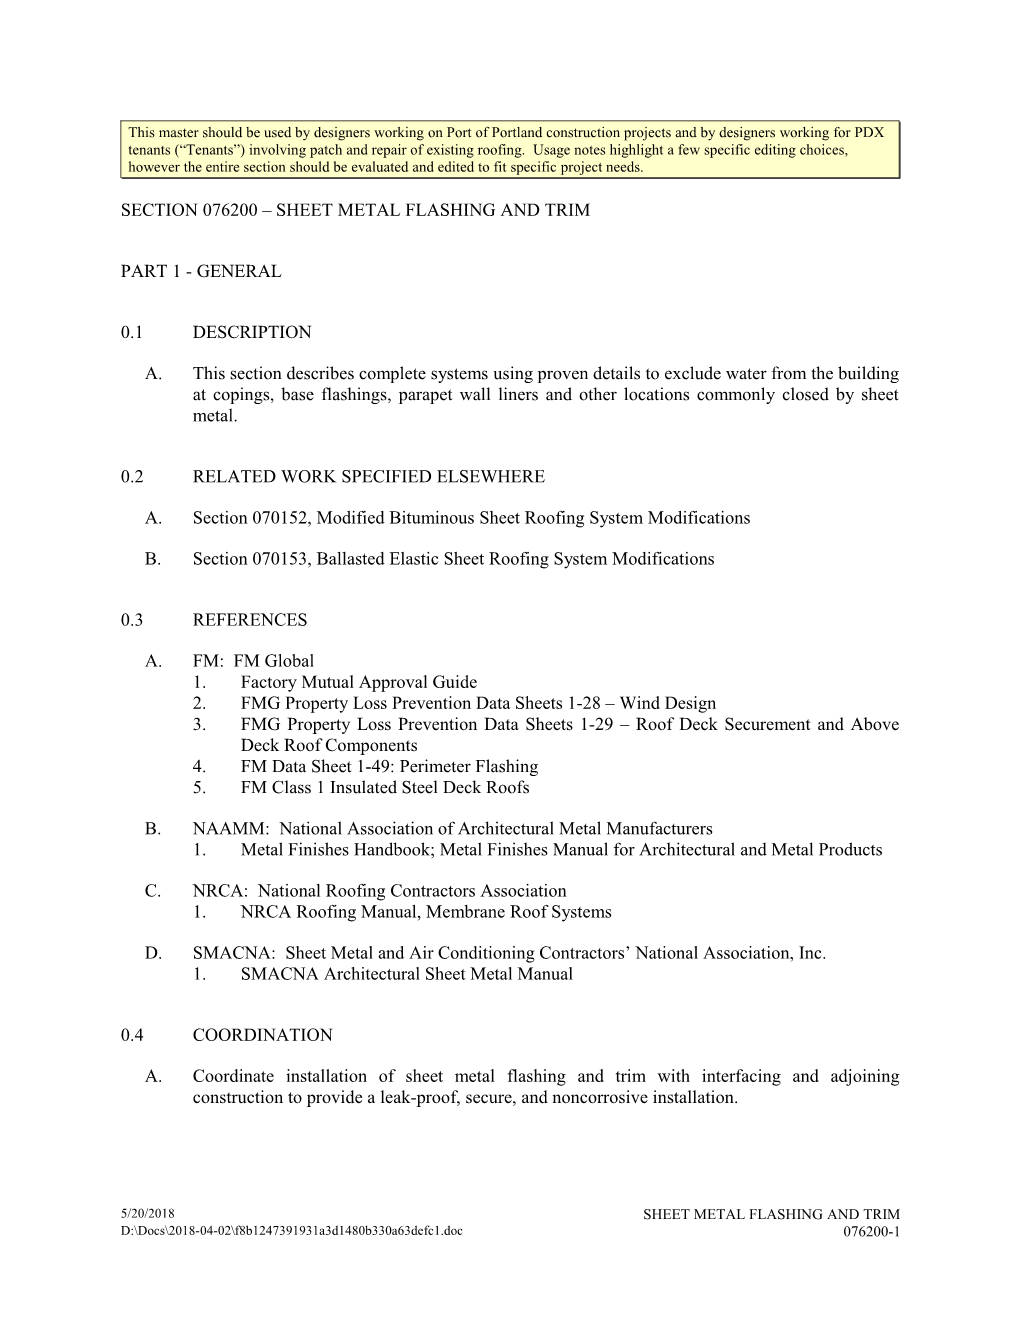 Section 076200 - Sheet Metal Flashing and Trim